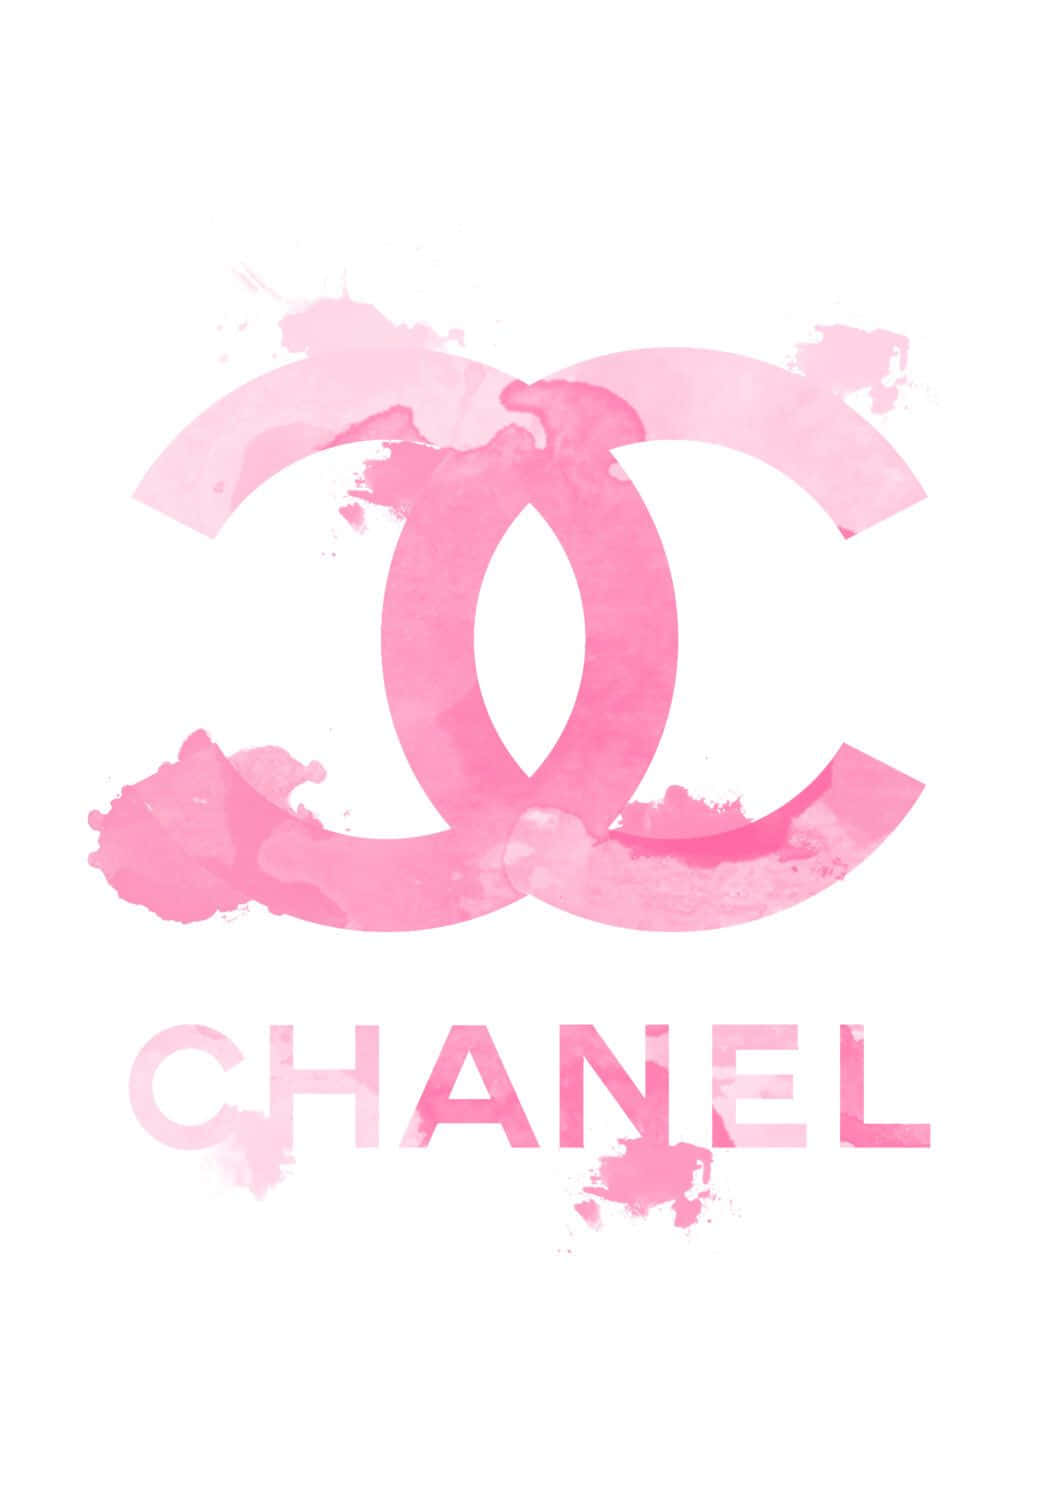 Iconicologo Del Marchio Di Fama Mondiale, Chanel